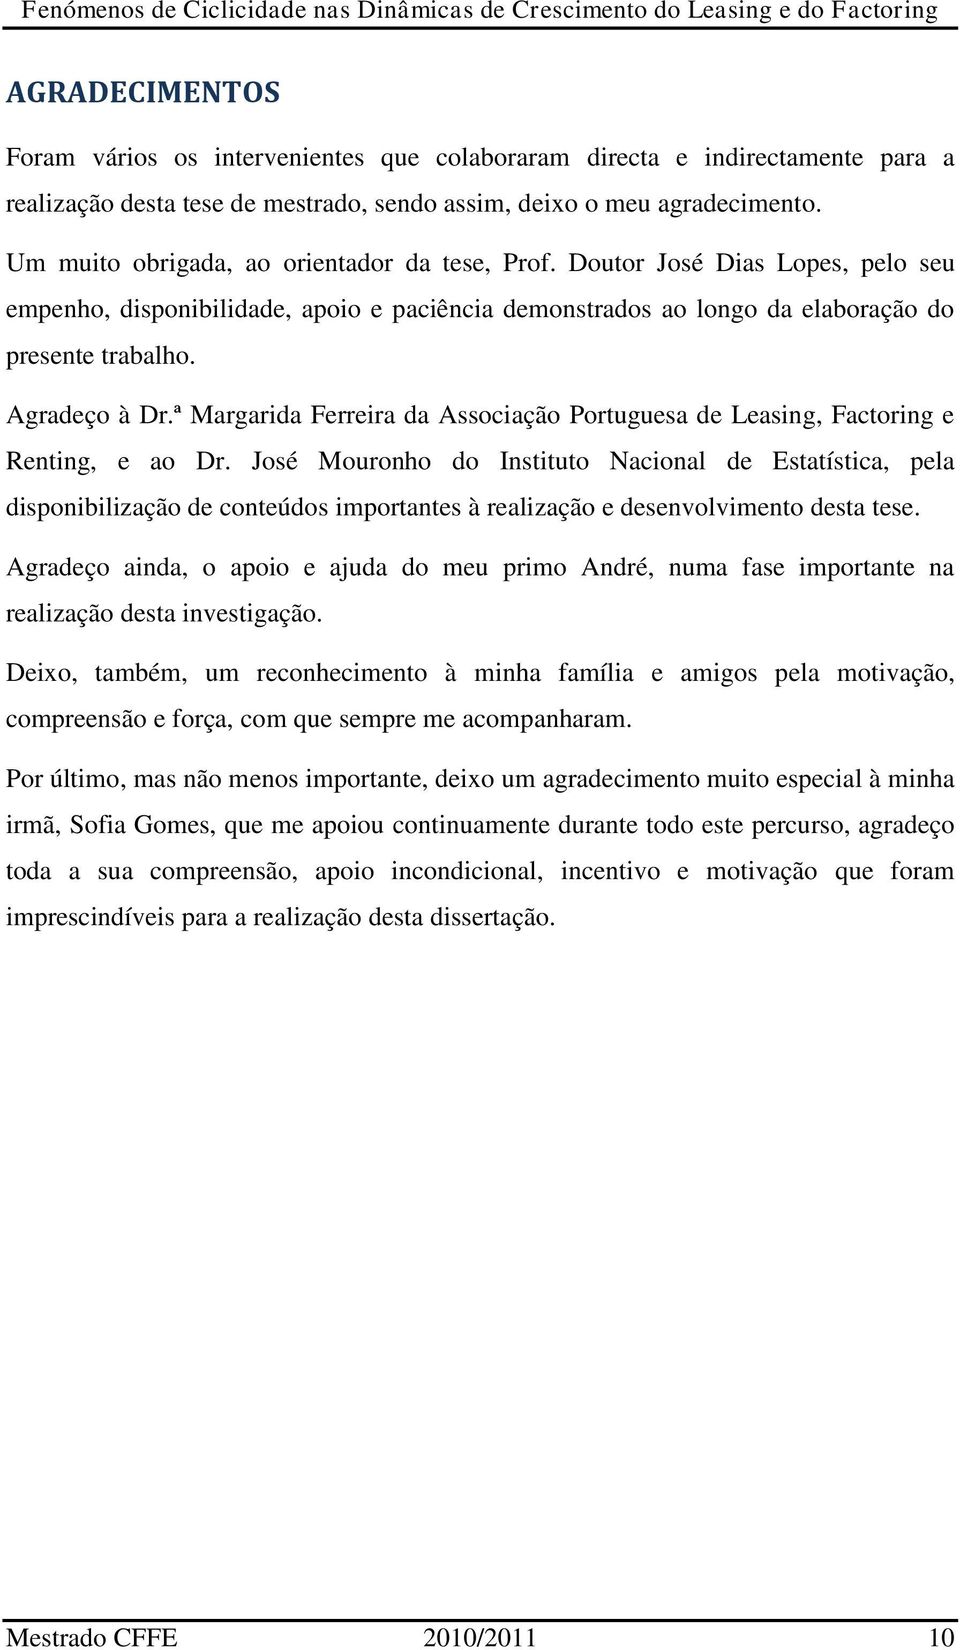 ª Margarida Ferreira da Associação Portuguesa de Leasing, Factoring e Renting, e ao Dr.